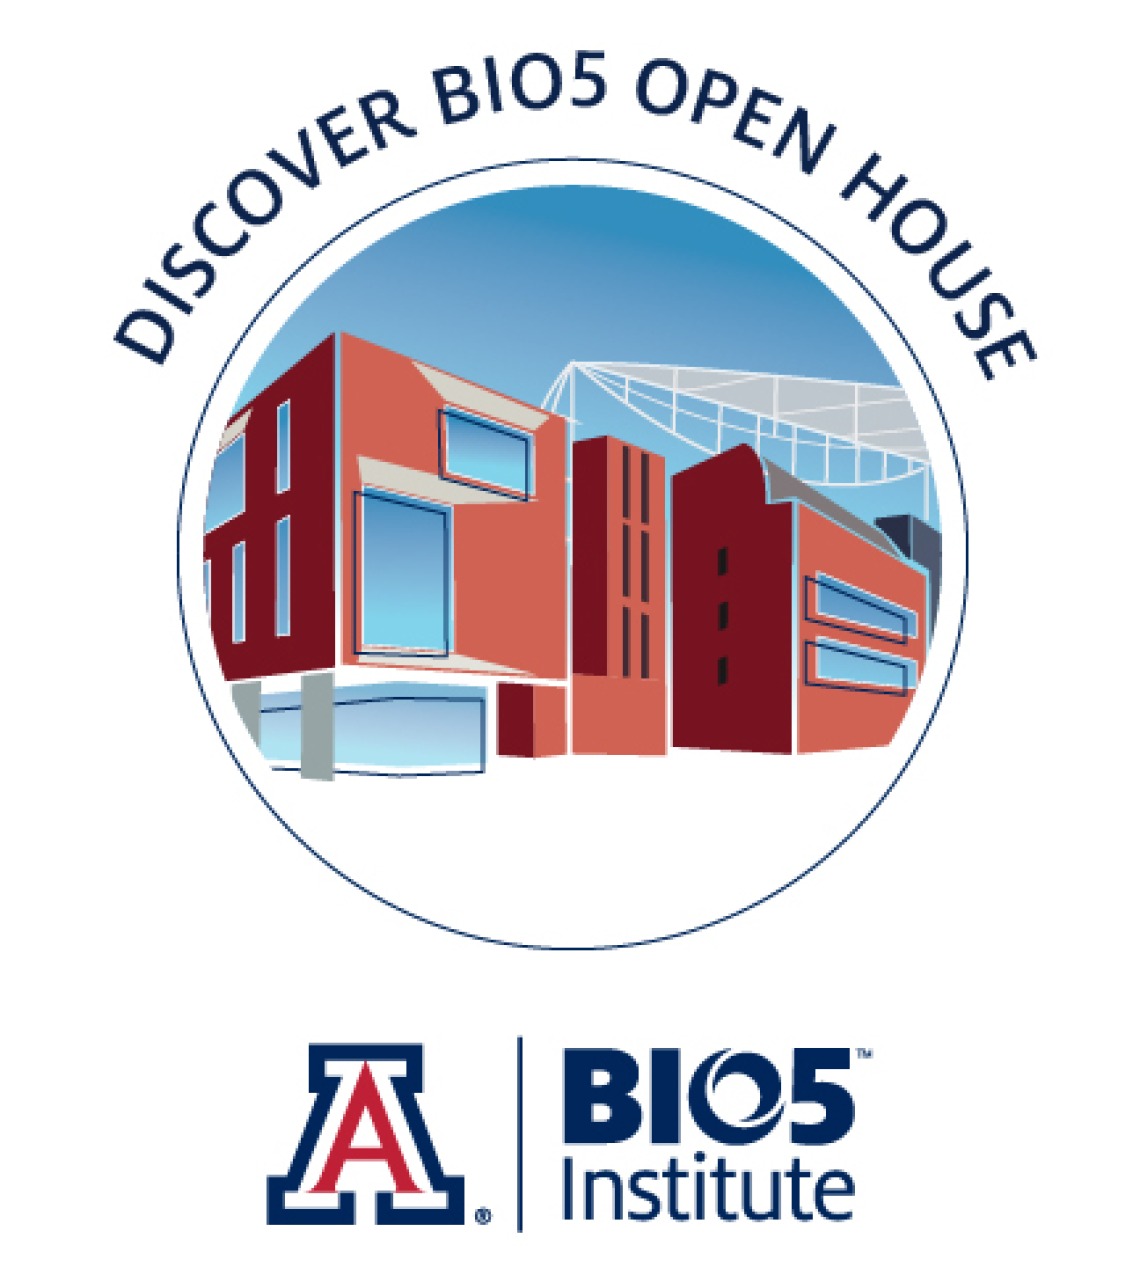 discover_bio5_open_house_0.jpg